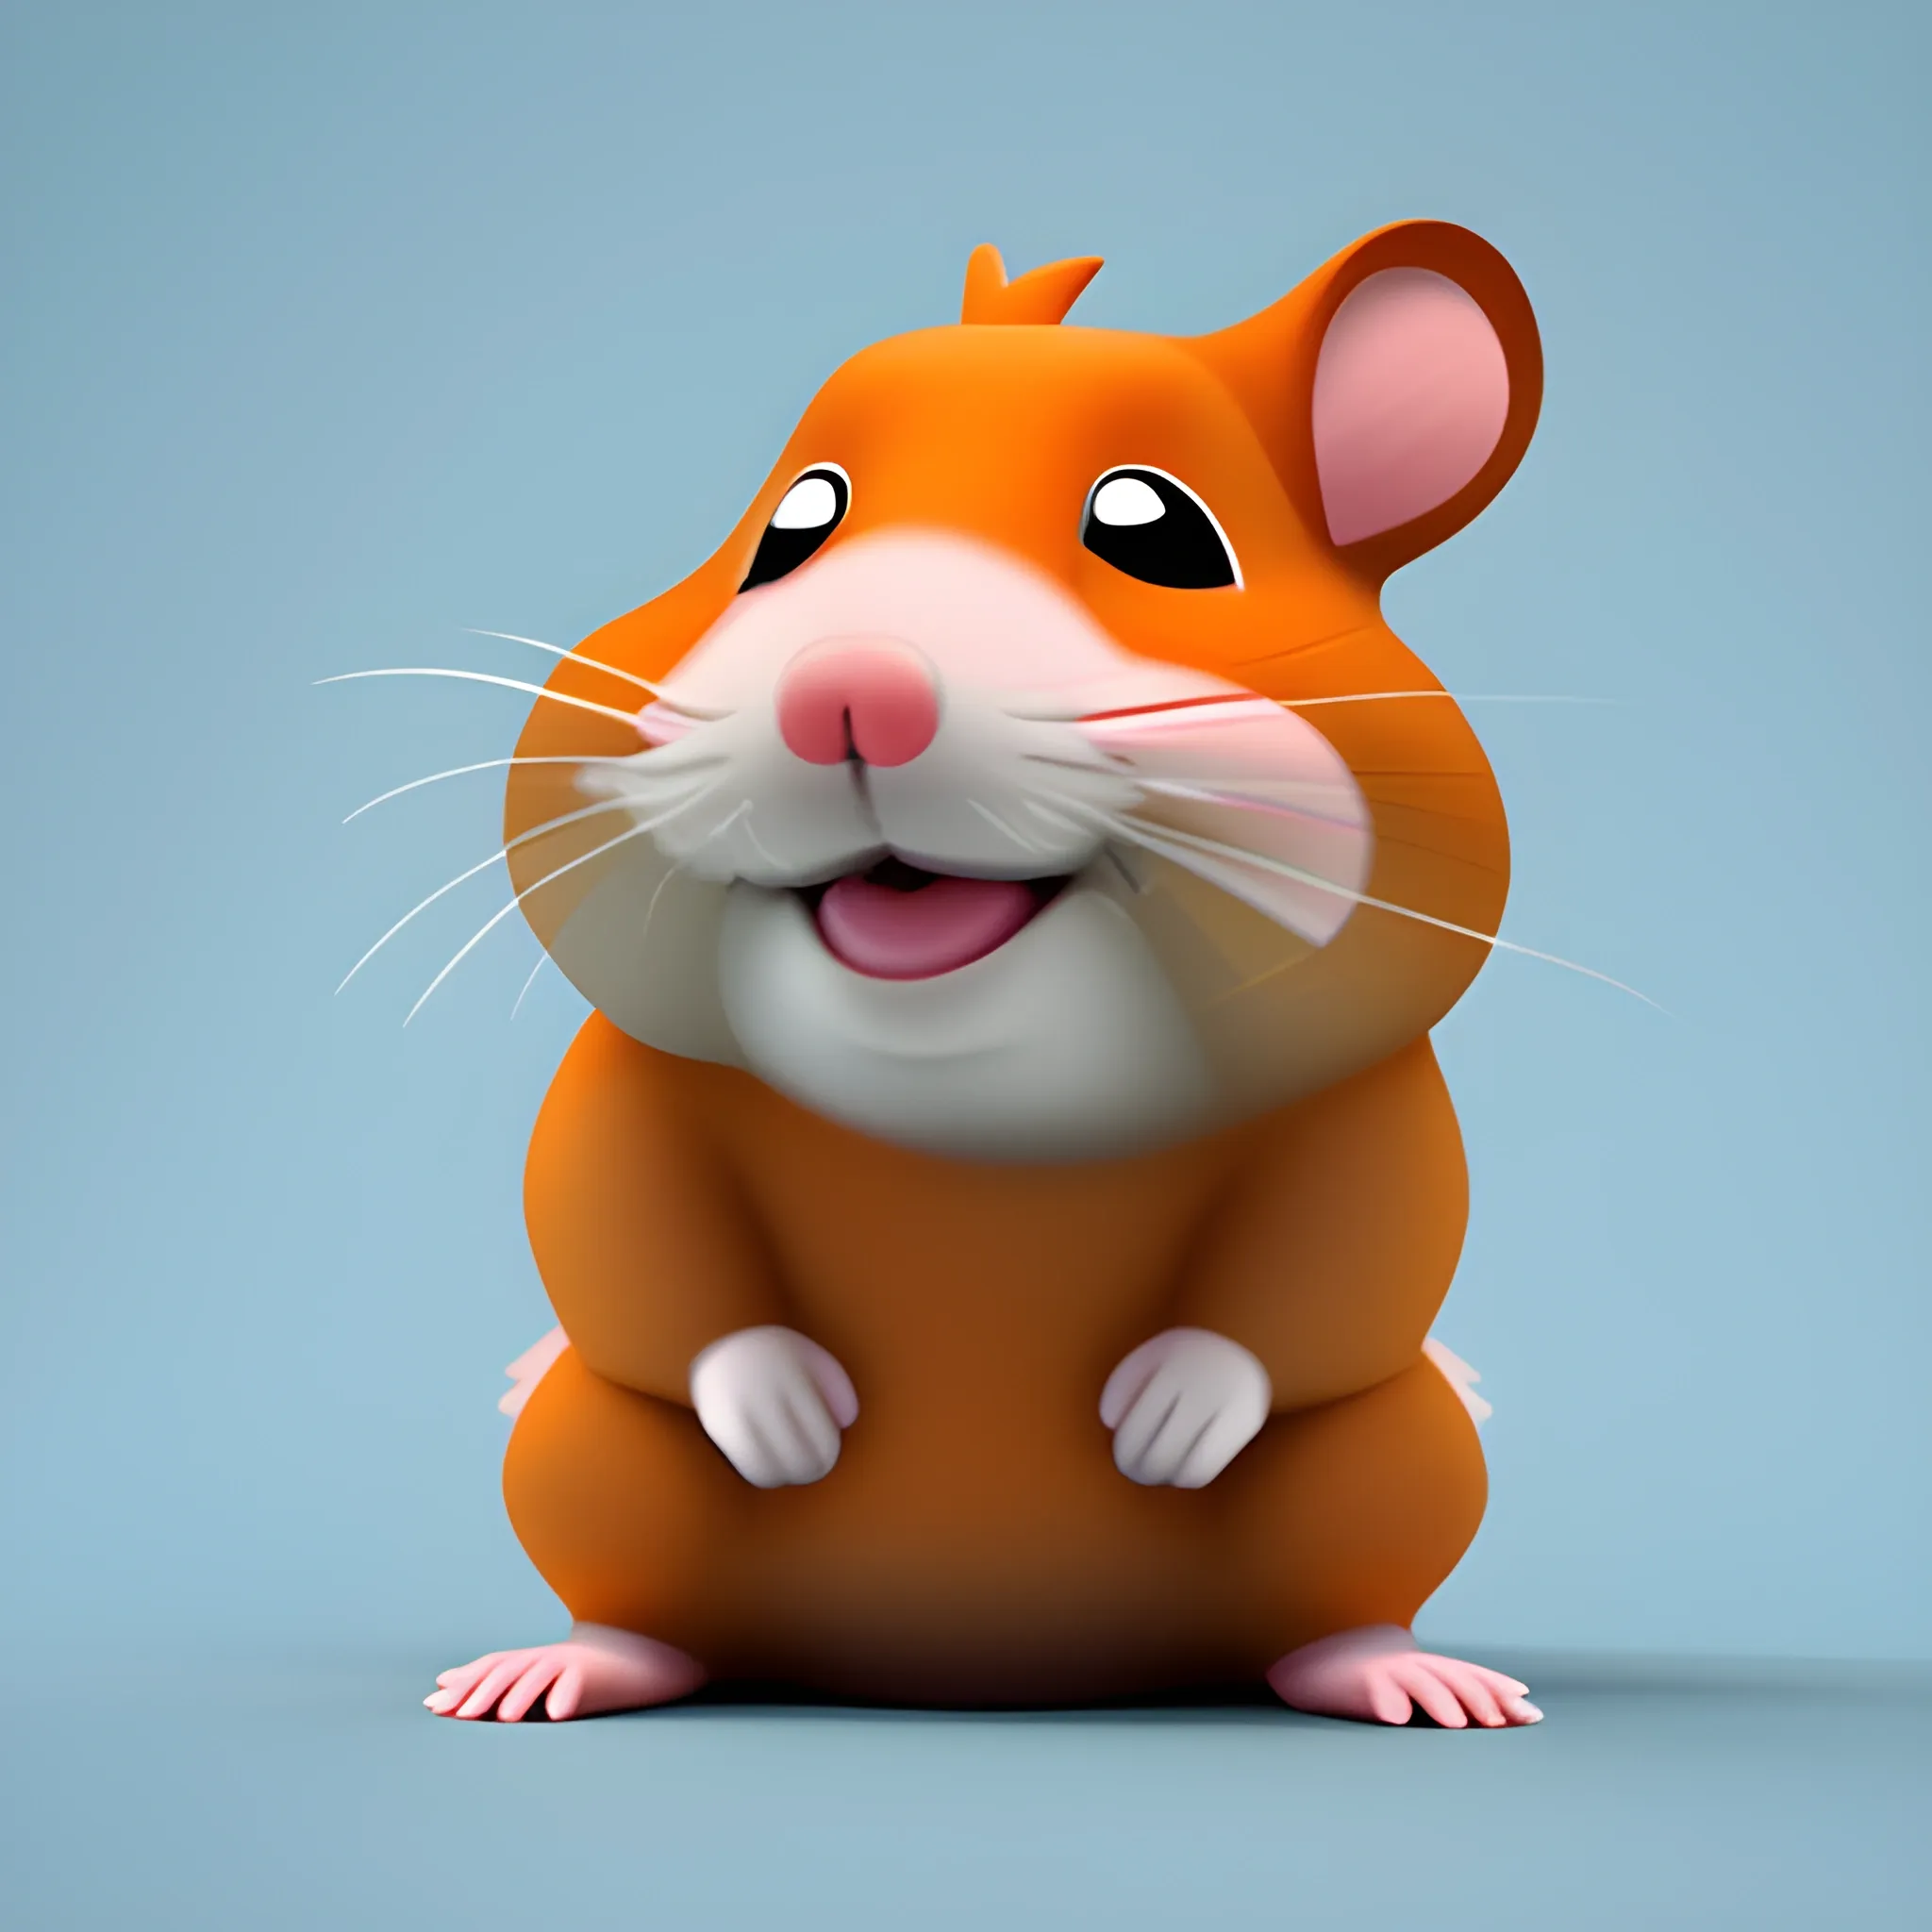 marcel davis 1&1 
goofy ahh hamster advertisment, 3D
